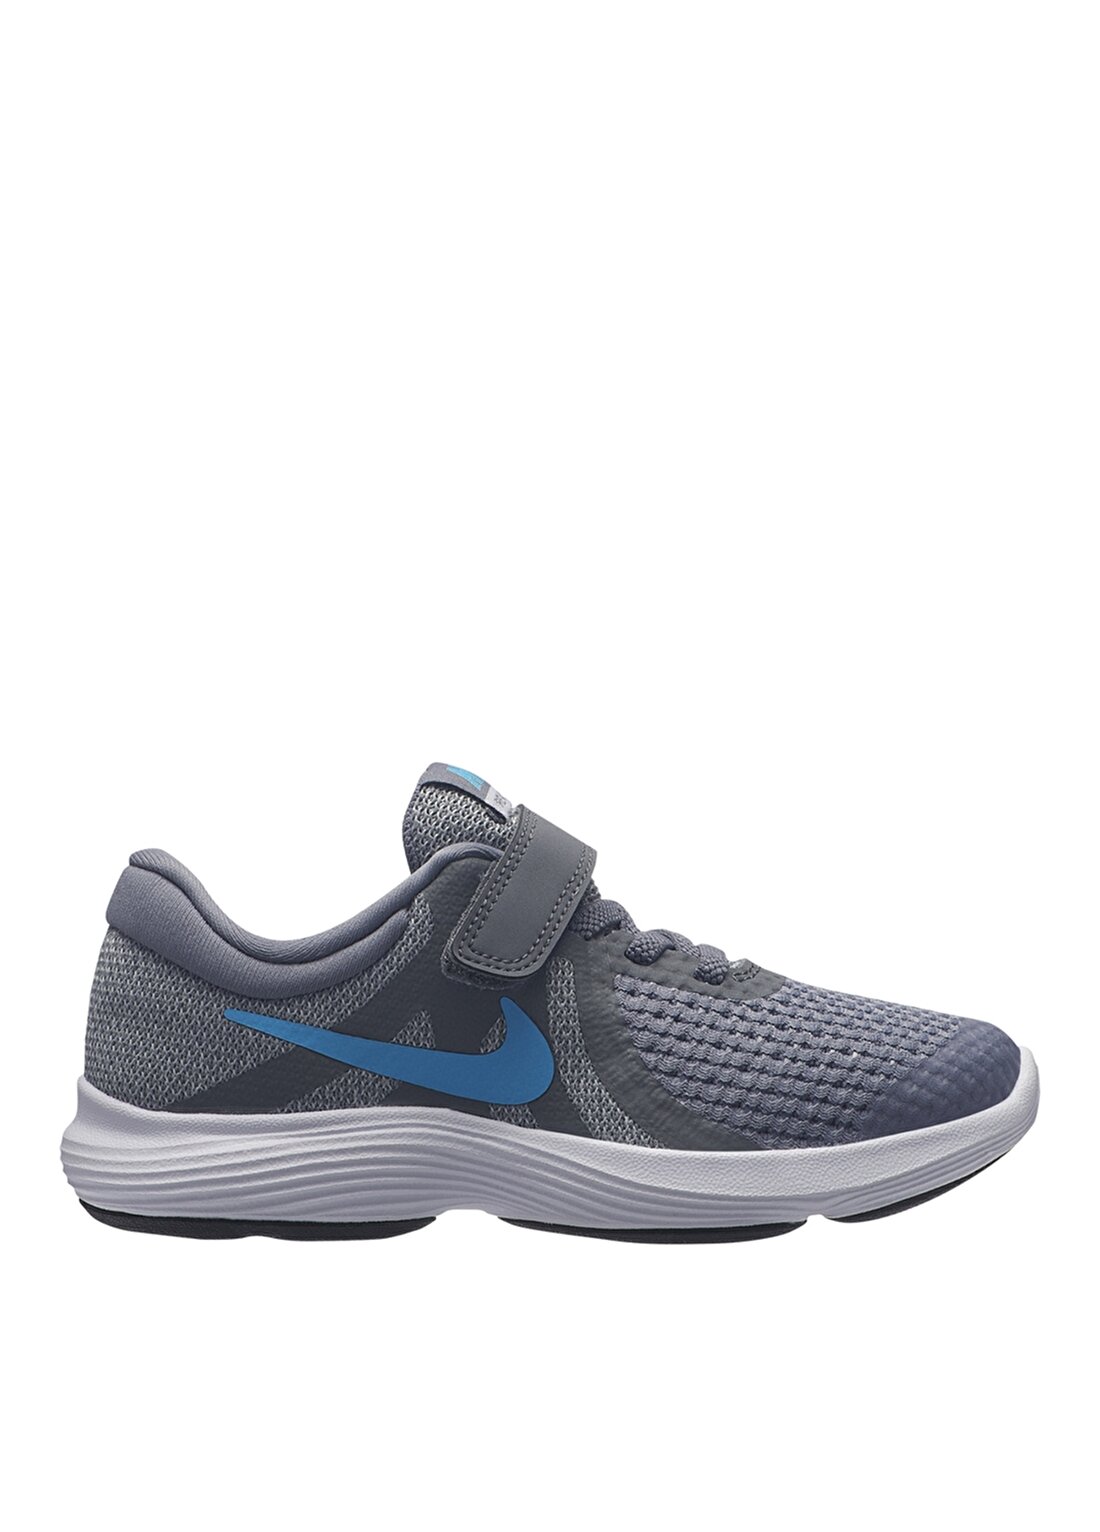 Nike Revolutıon 4 (Psv) Yürüyüş Ayakkabısı